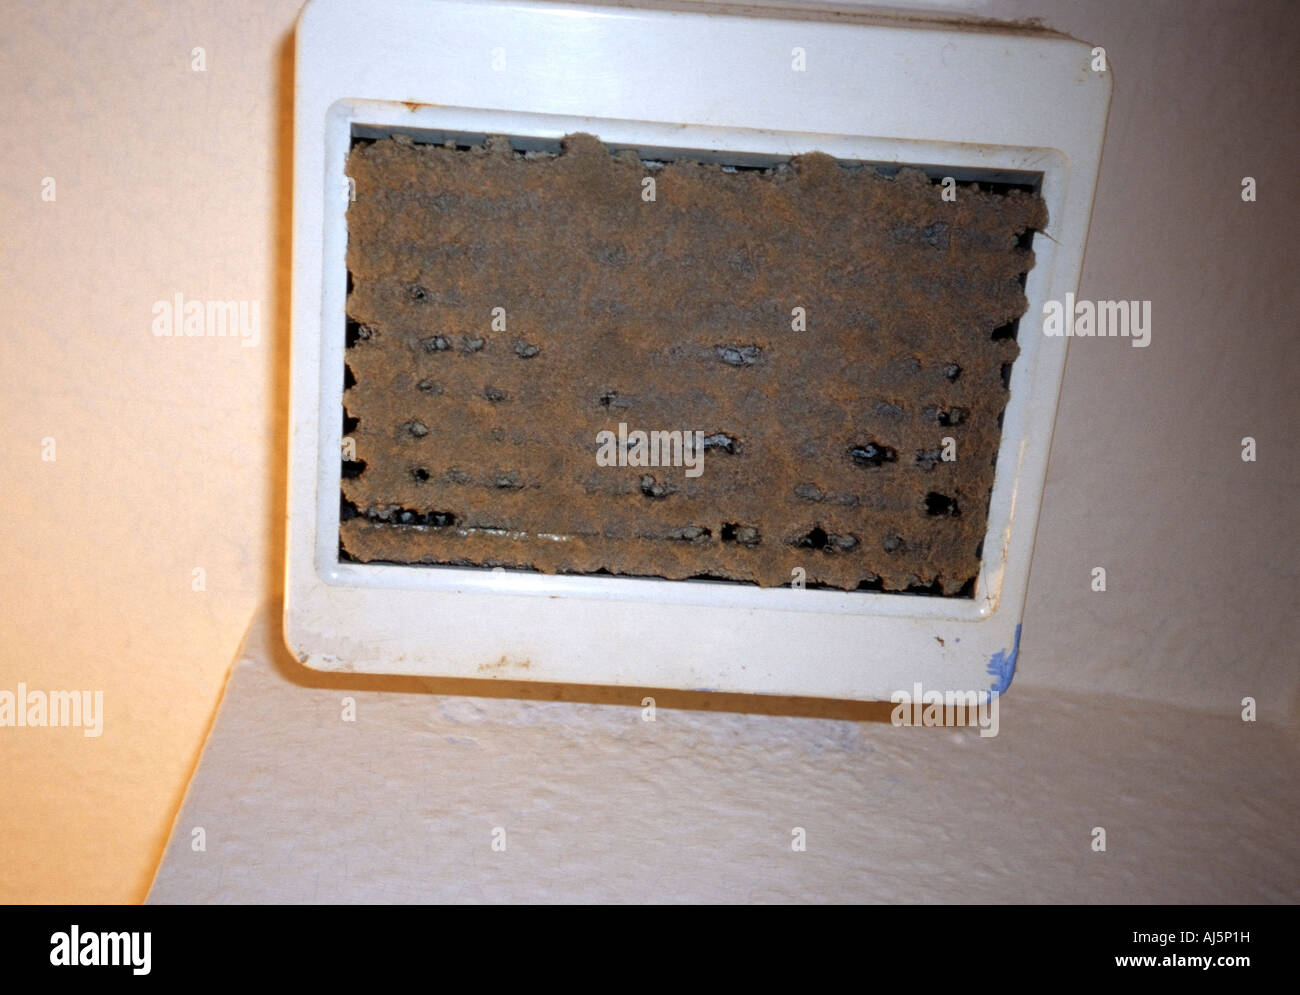 Ventilador extractor de techo obstruido con polvo y suciedad. Foto de stock